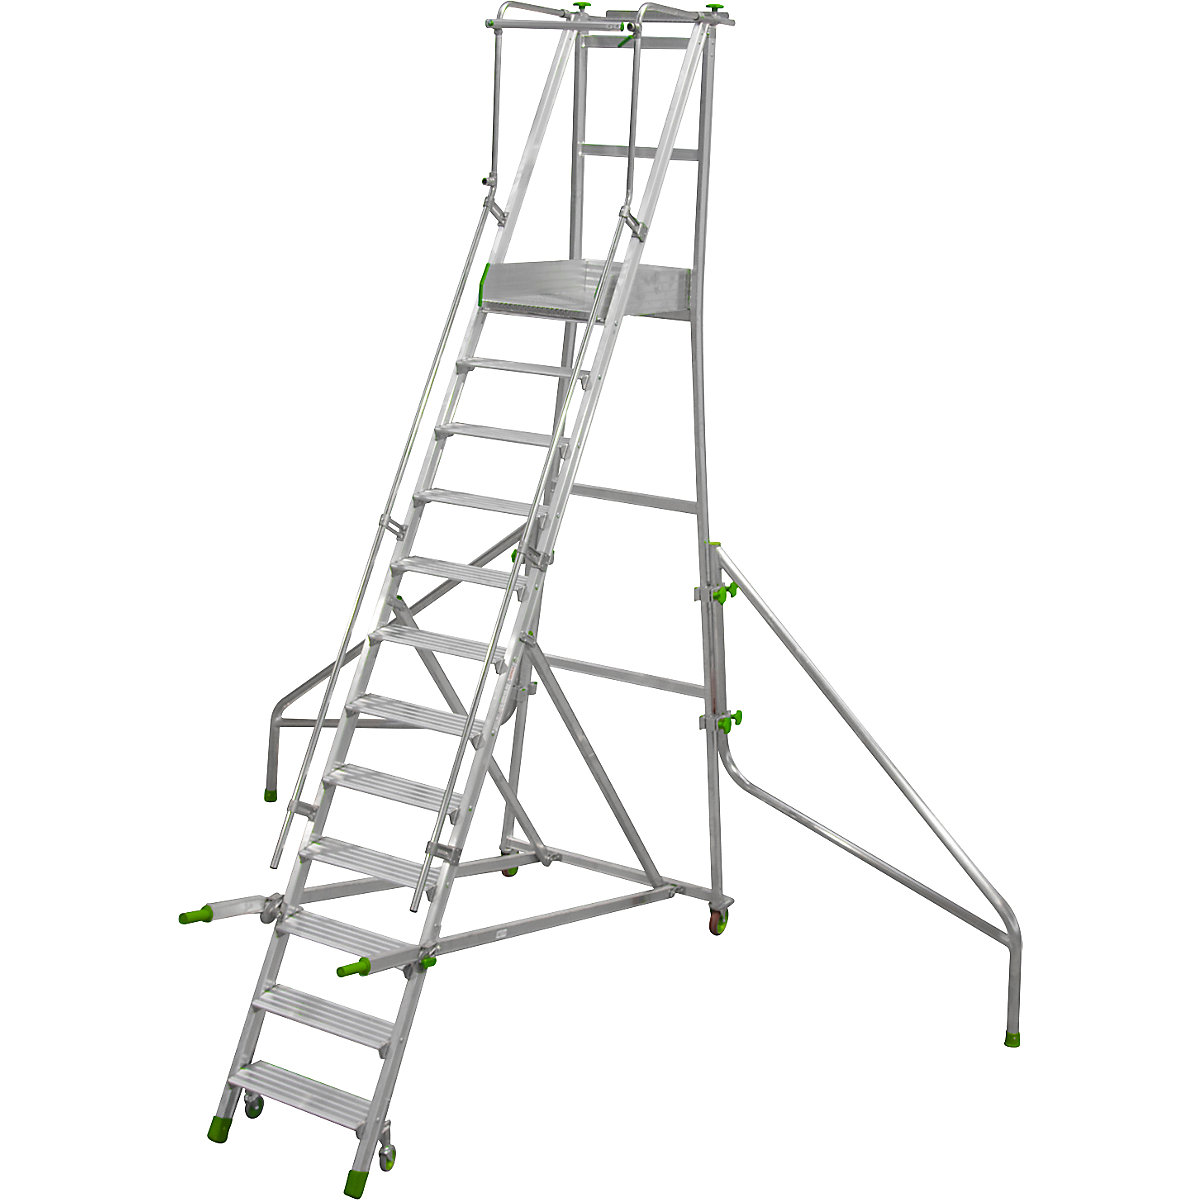 Mobile Alu-Podesttreppe, klappbar, mit gerieften Aluminiumstufen, 12 Stufen inkl. Plattform